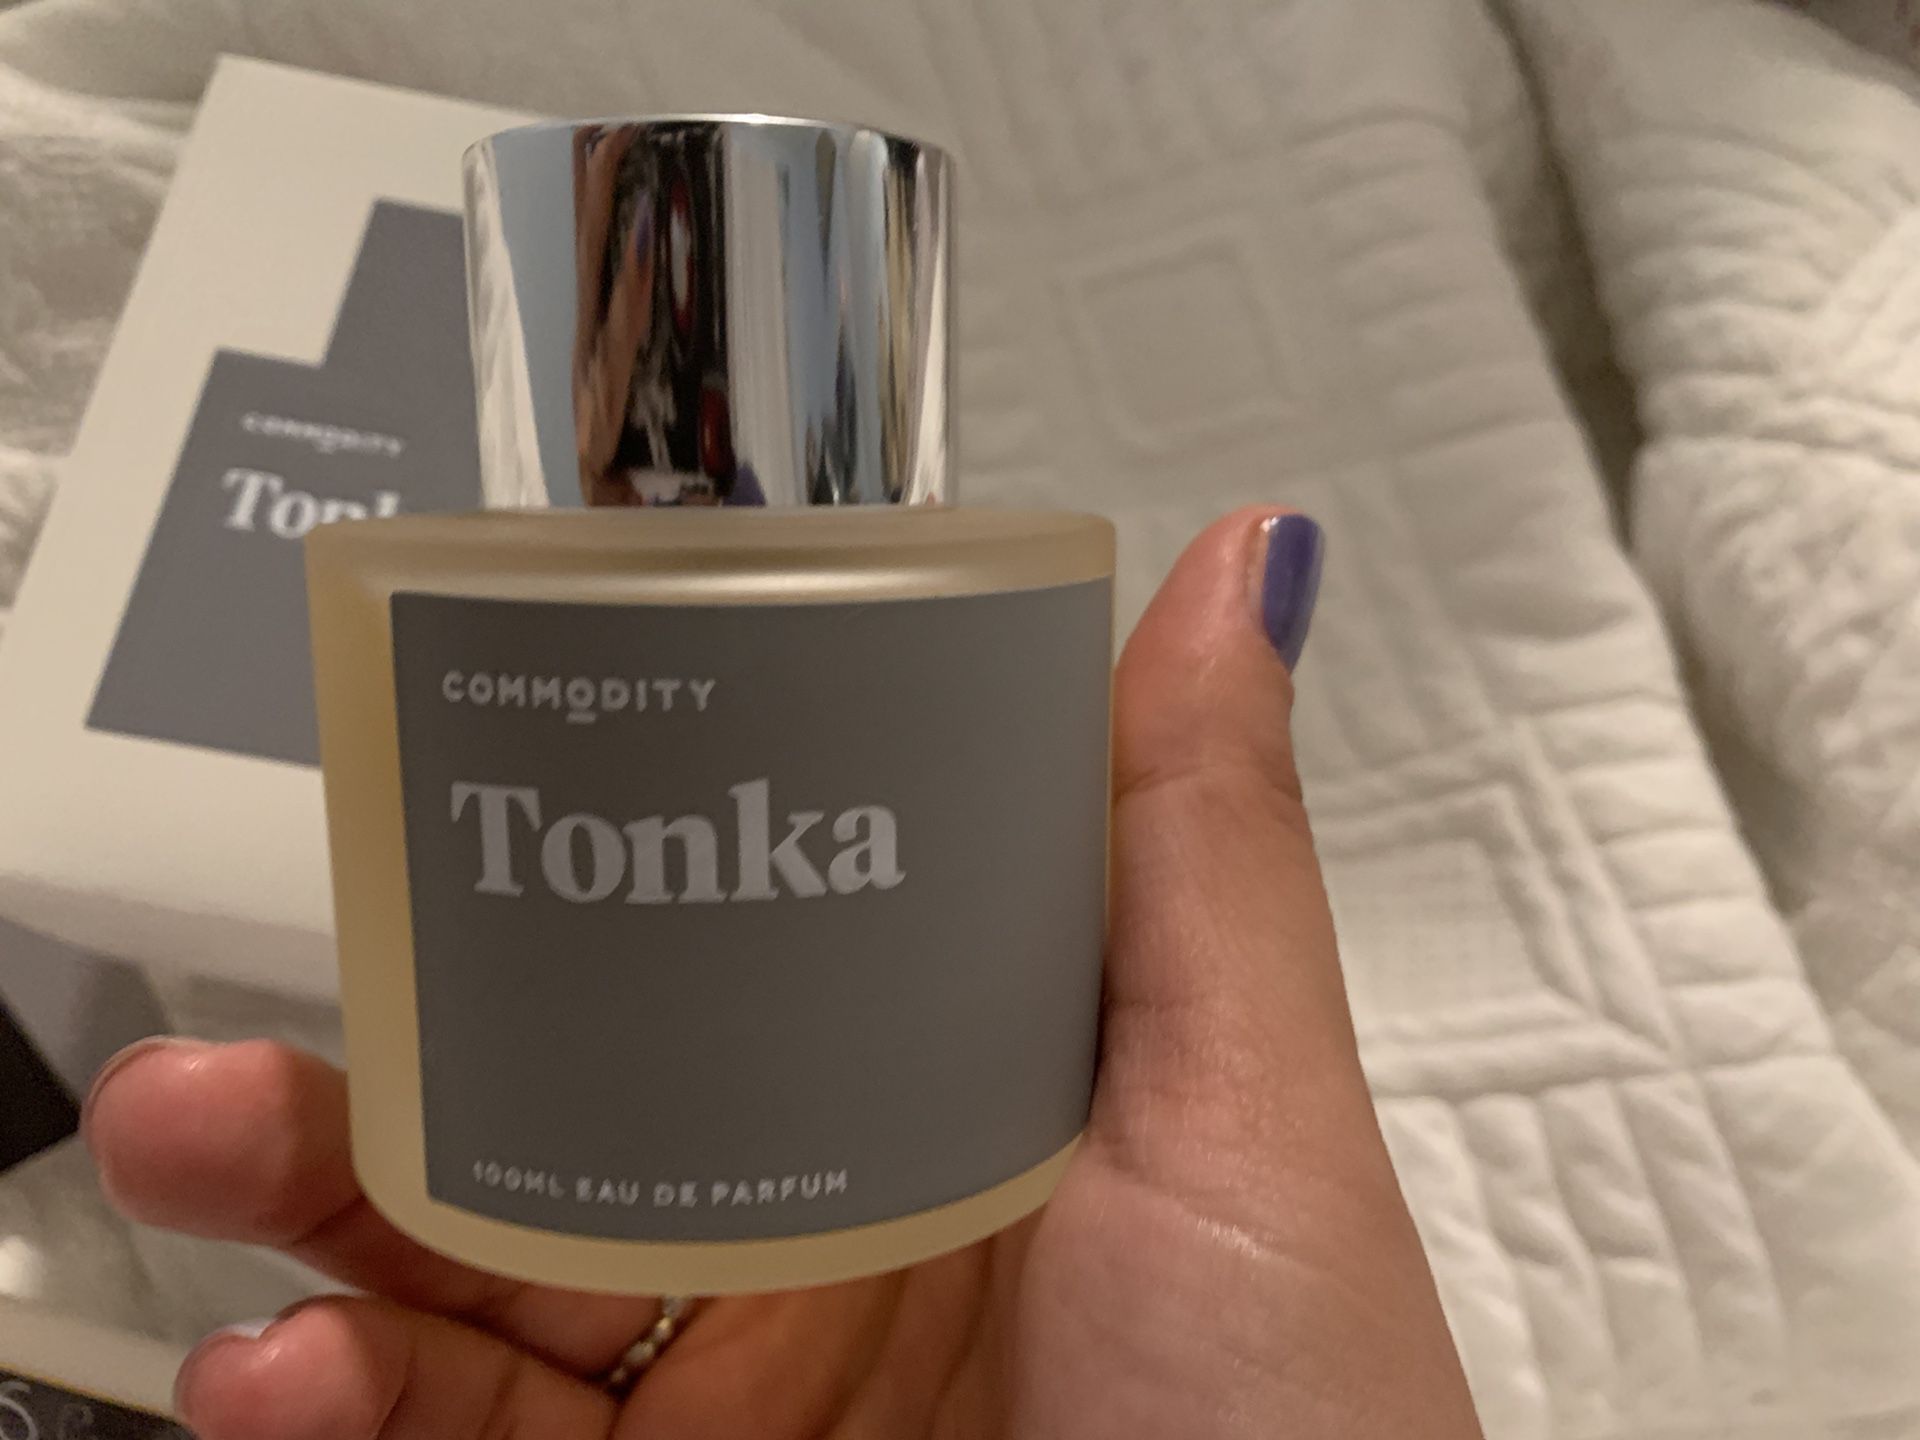 Commodity Tonka Fragrance